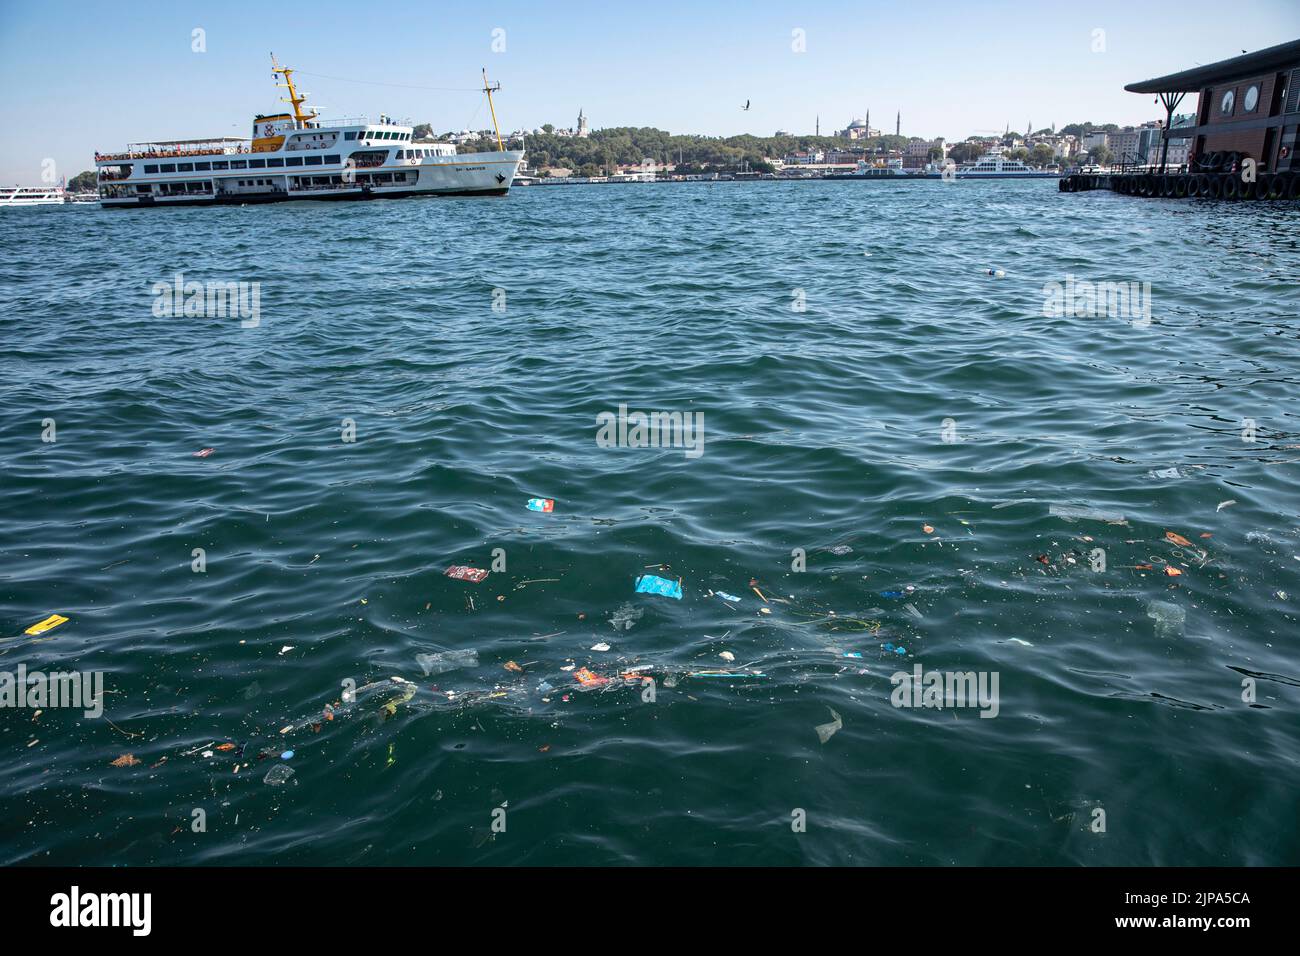 Le ferry des lignes de la ville et la mosquée Sainte-Sophie vu dans le fond des déchets plastiques jetables dérivant à la surface de la mer à l'intérieur et autour de la jetée des lignes de la ville de Karakoy suite à une forte pluie et une tempête à Istanbul. Banque D'Images